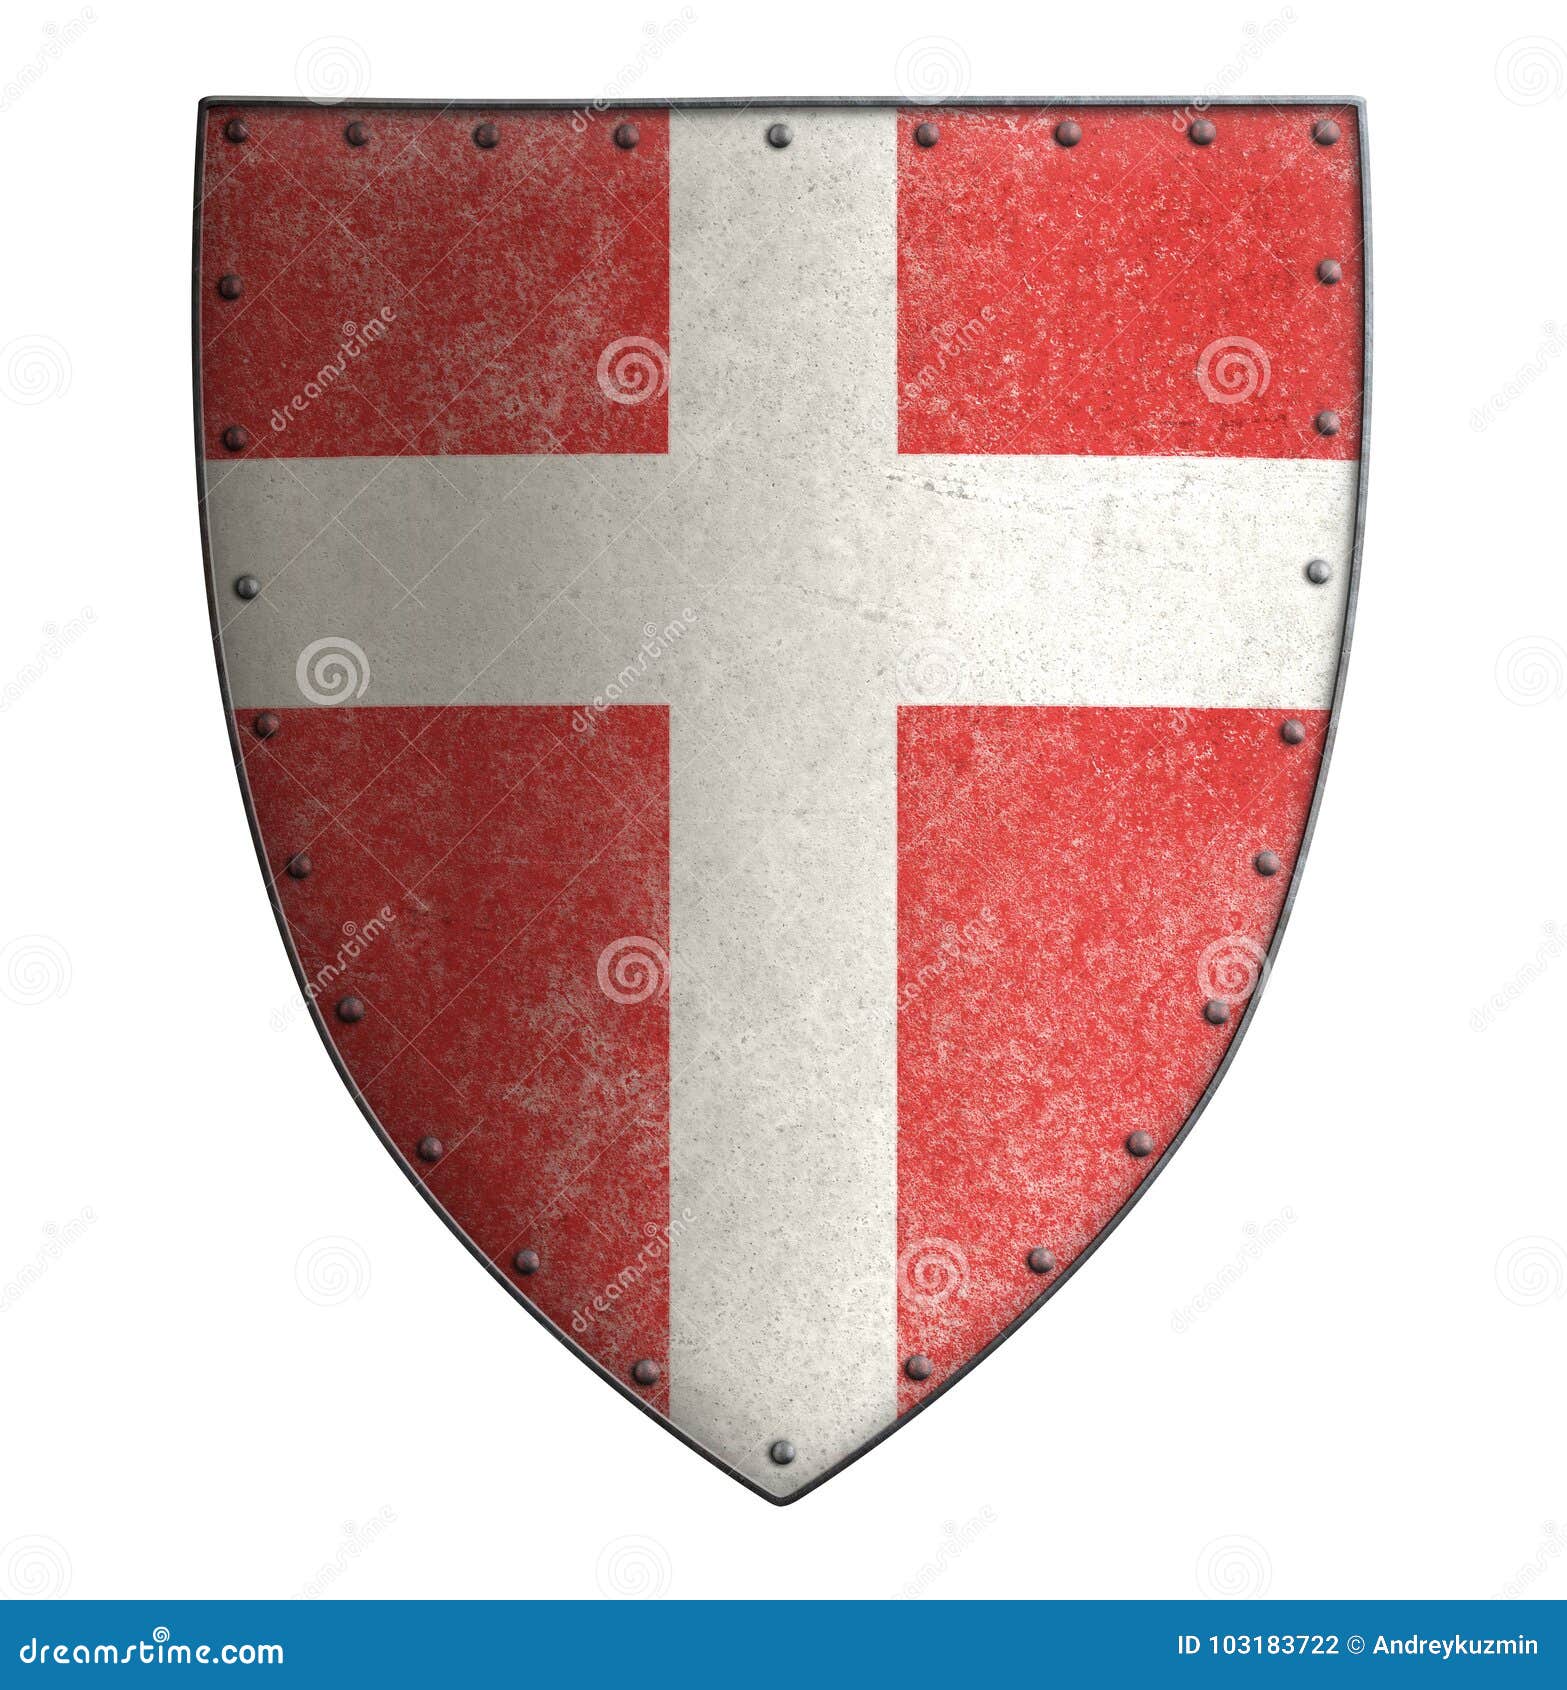 Het middeleeuwse schild van het kruisvaarder` s rode metaal met kruis isoleerde 3d illustratie. Kruisvaarder` s schild met kruis dat op wit wordt geïsoleerd